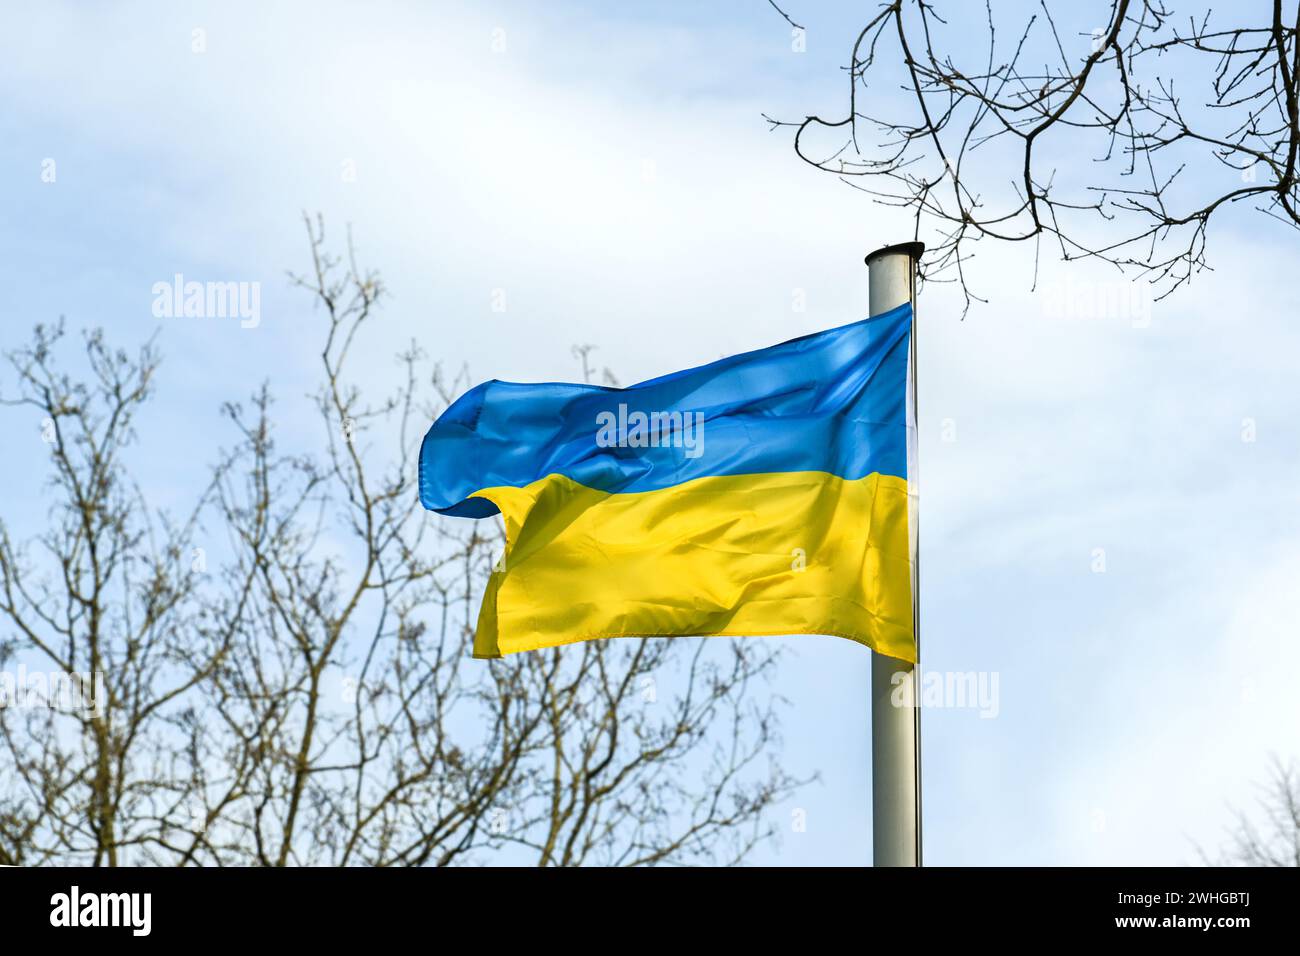 Flagge der Ukraine mit blauen und gelben Streifen, die zwischen Bäumen vor bewölktem Himmel wehen, Kopierraum, ausgewählter Fokus Stockfoto